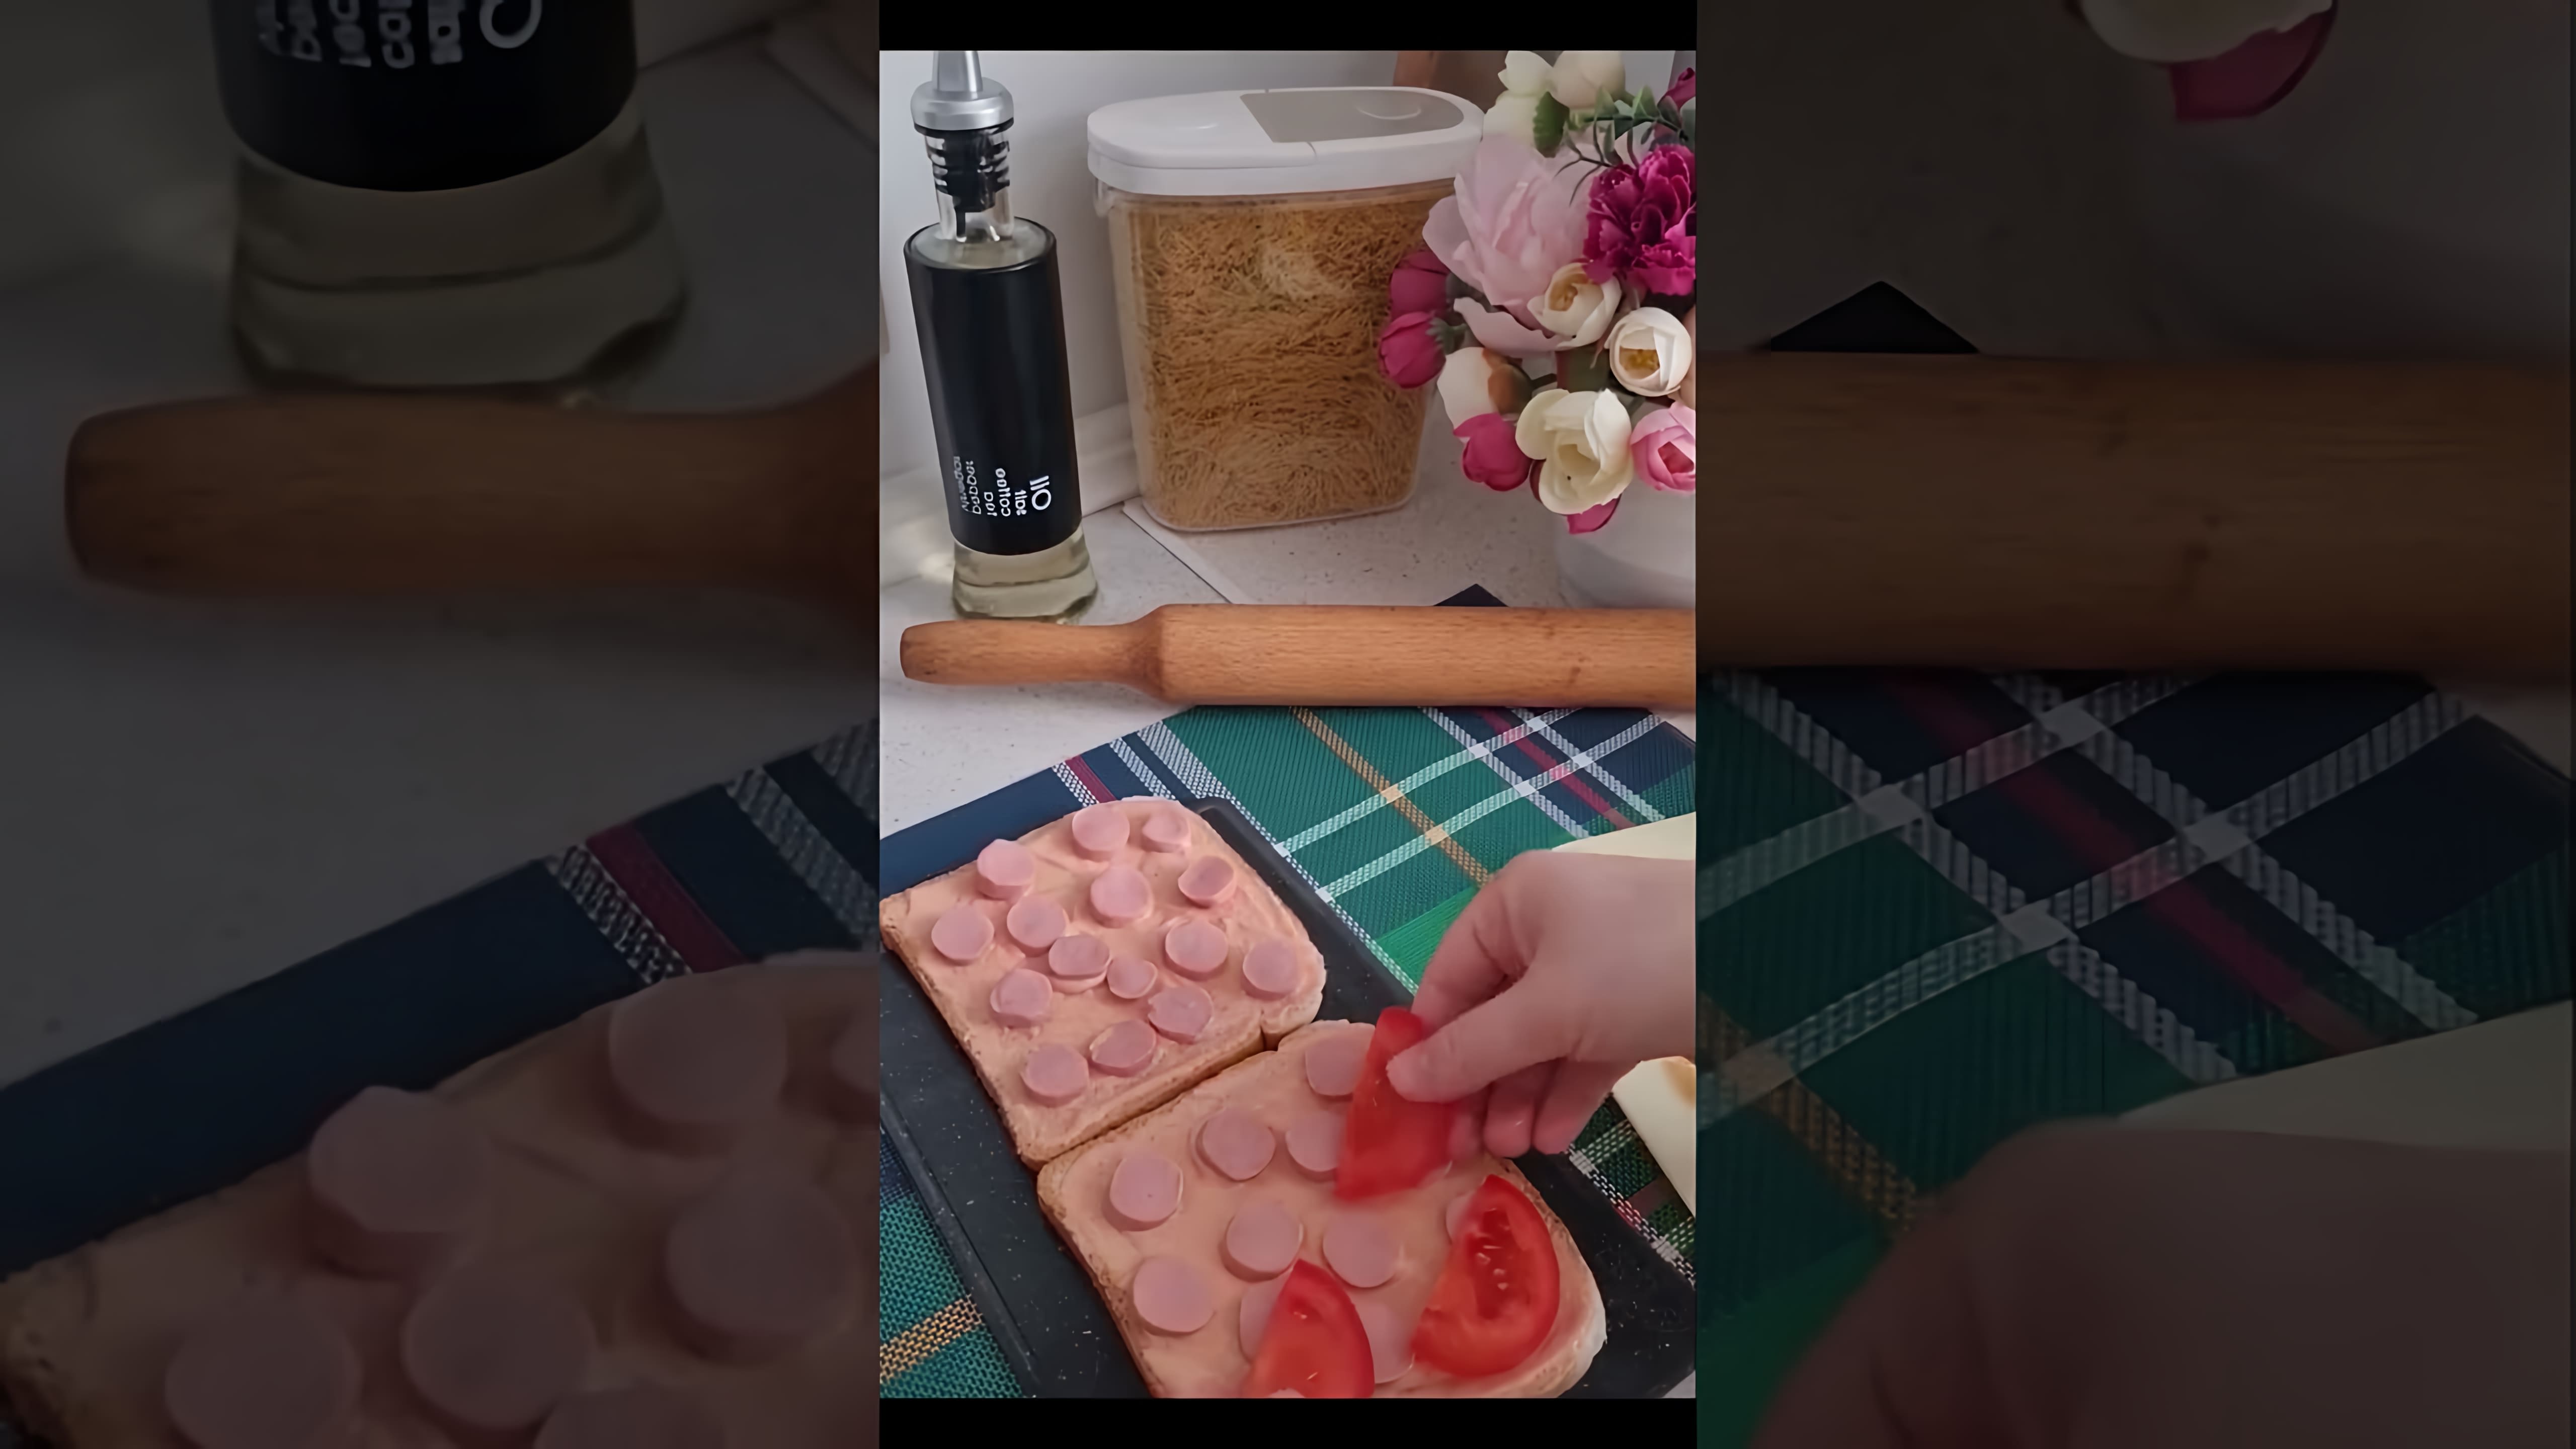 В этом видео-ролике мы увидим процесс приготовления быстрой пиццы на тостовом хлебе